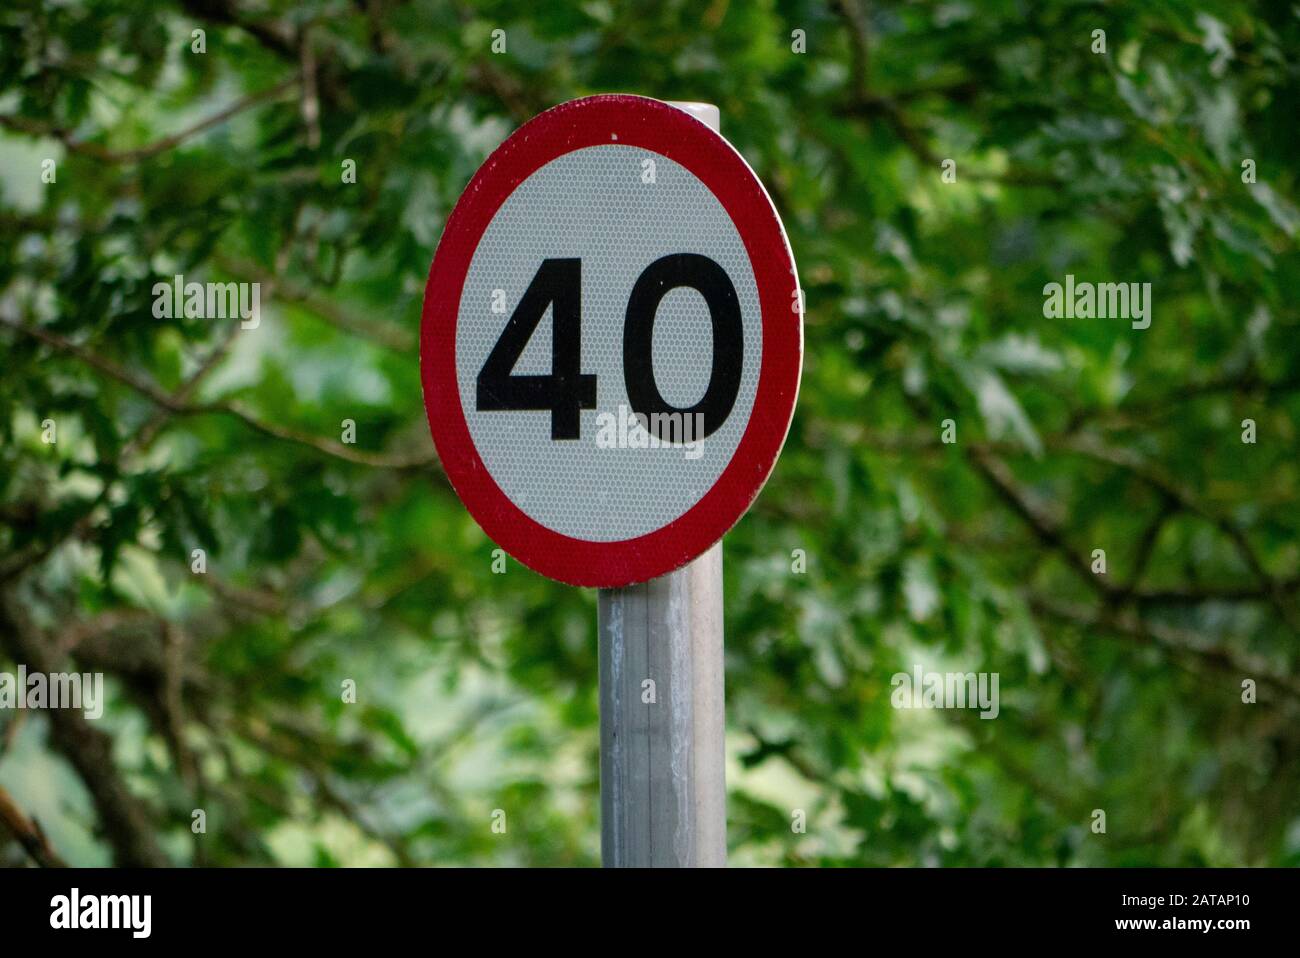 Nahaufnahme eines britischen Straßenschildes mit einer Geschwindigkeit von 40 km/h und einem natürlichen grünen Hintergrund Stockfoto